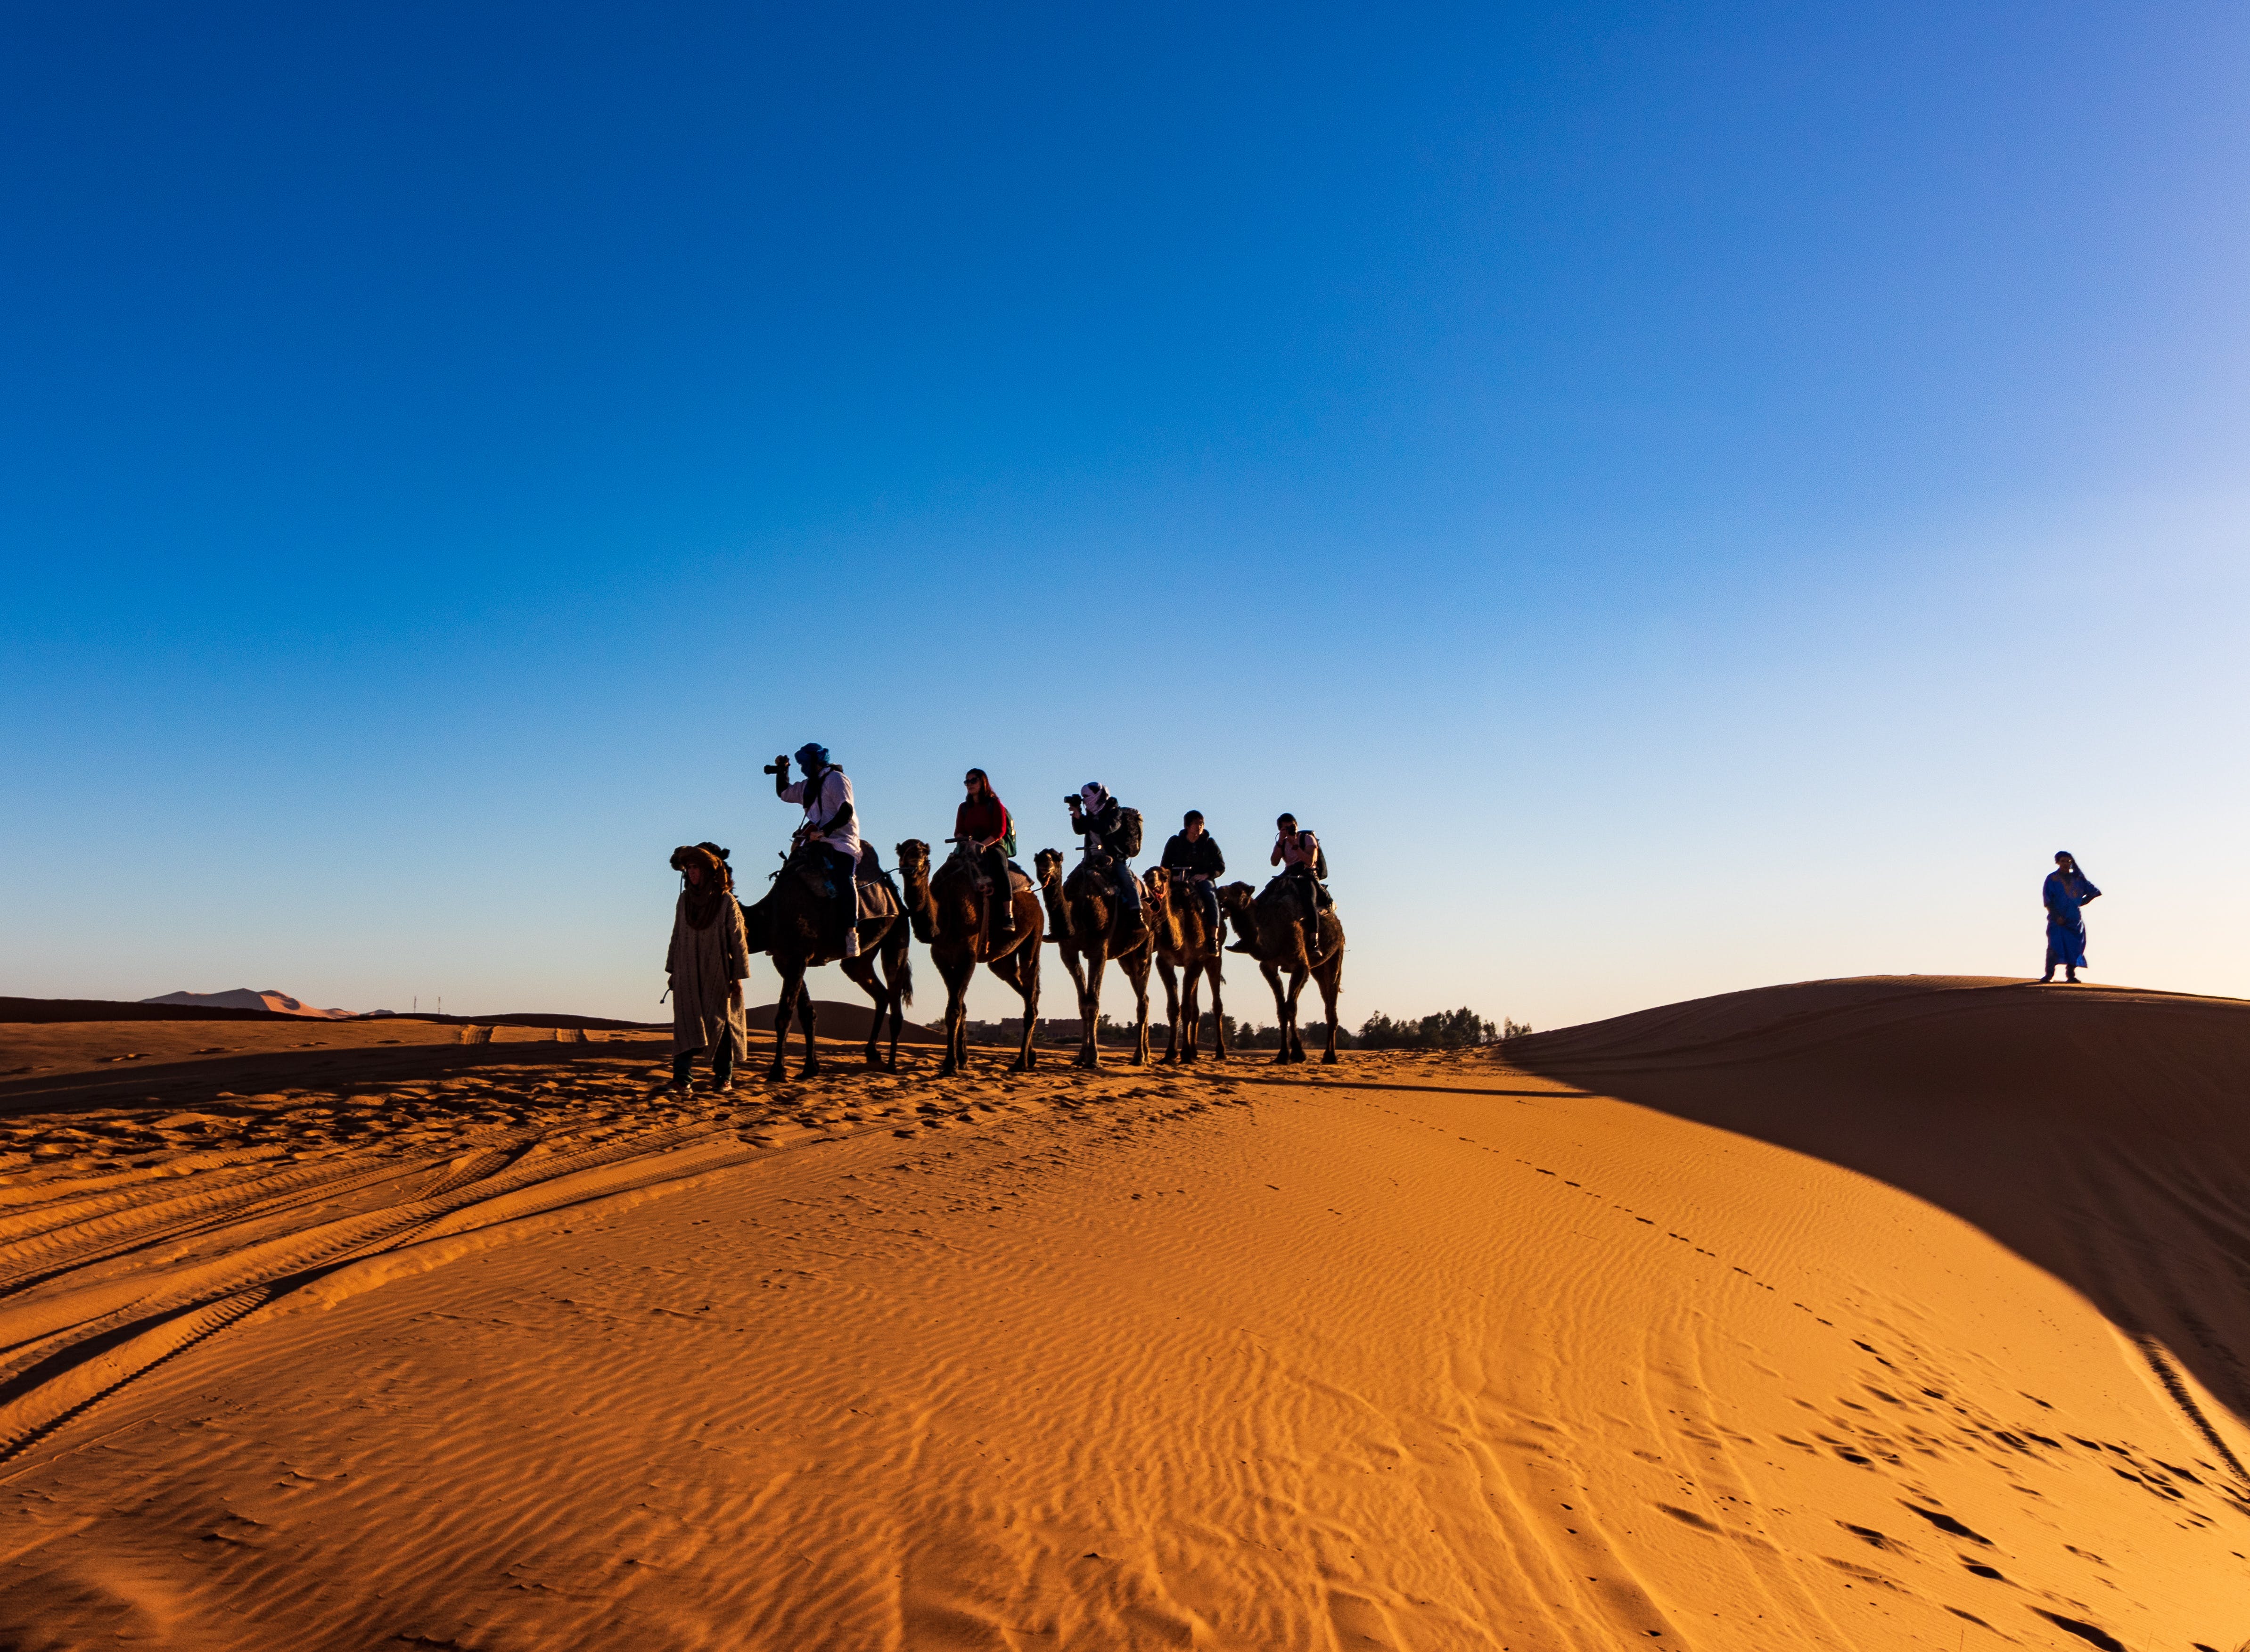 Un groupe de personnes chevauchant un chameau dans le d&eacutesert.